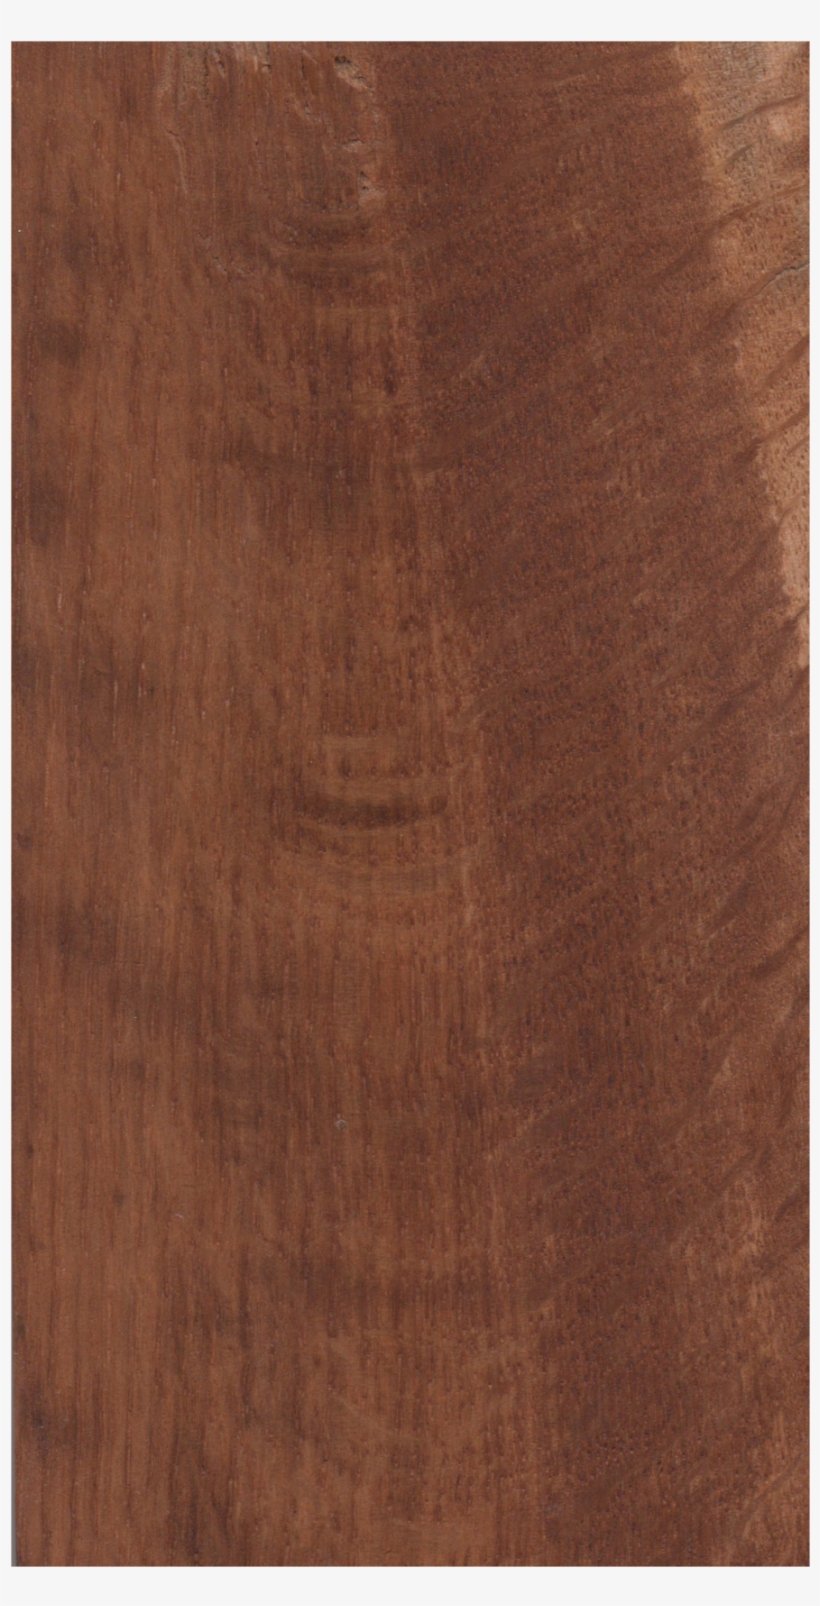 Piece Of Wood Png - Hardwood, transparent png #191831